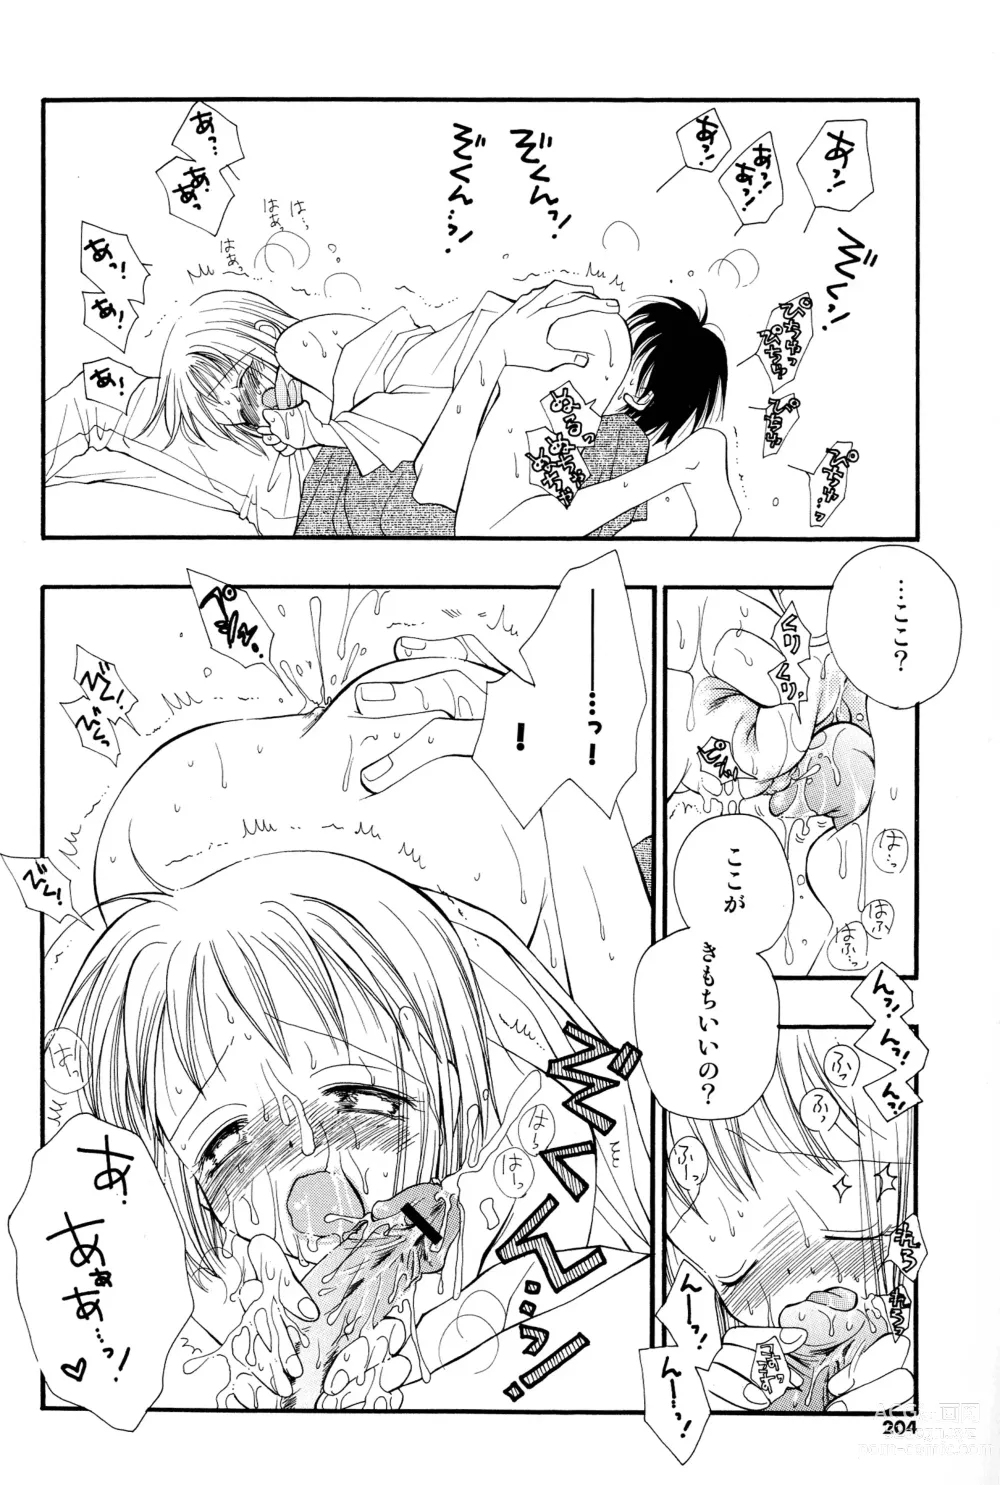 Page 201 of manga Cherry♥Pai Shinsouban